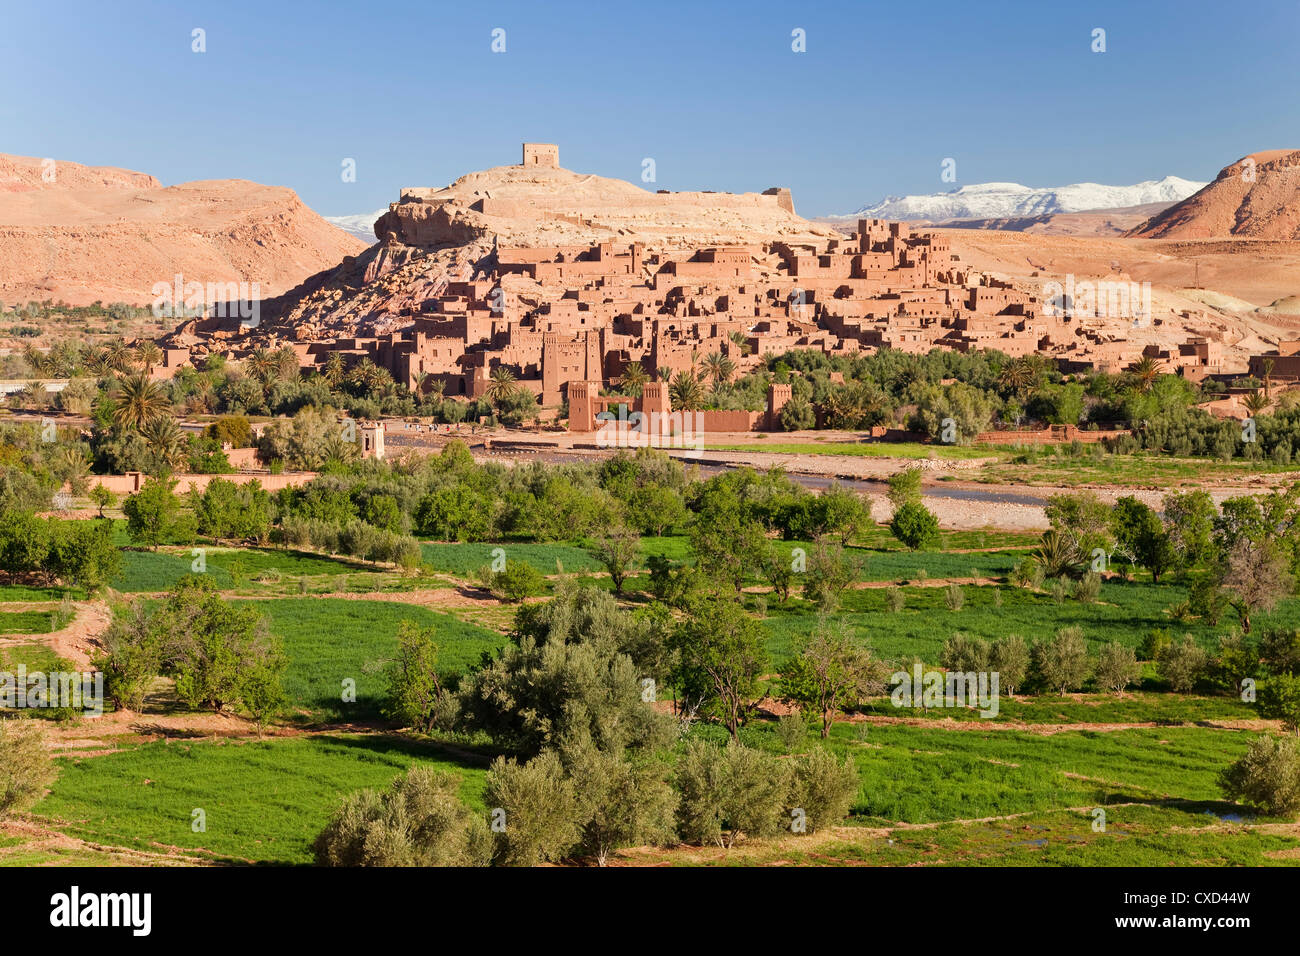 Stadt von Ait Benhaddou auf einem ehemaligen Karawanenstraße am Flussufer Ouarzazate verwendet oft als Drehort, Marokko Stockfoto